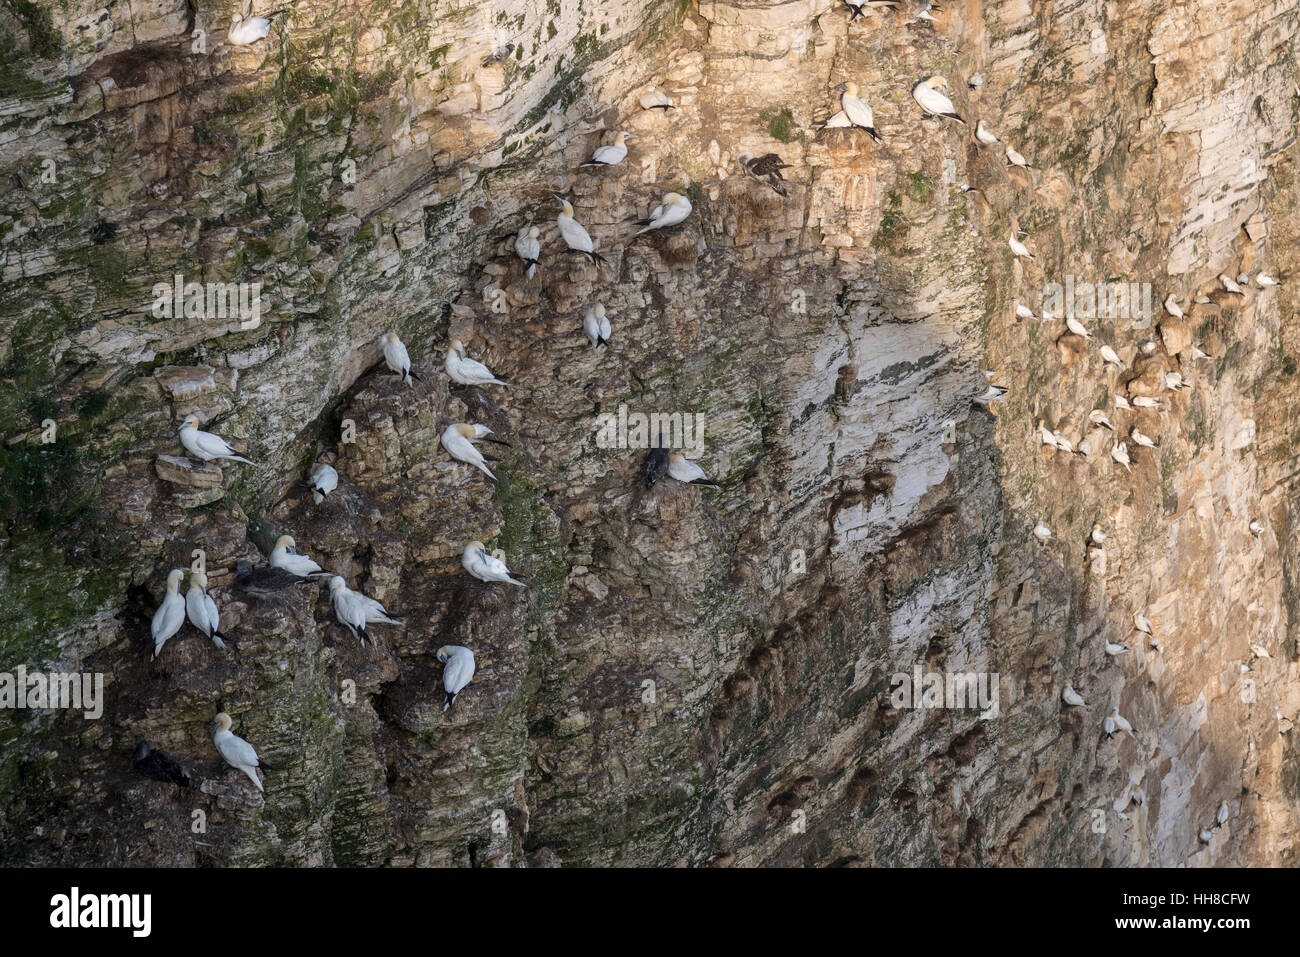 Bassan sur la dentelle des falaises de craie à Bempton sur la côte est de l'Angleterre. Un endroit populaire pour voir des colonies d'oiseaux de mer. Banque D'Images